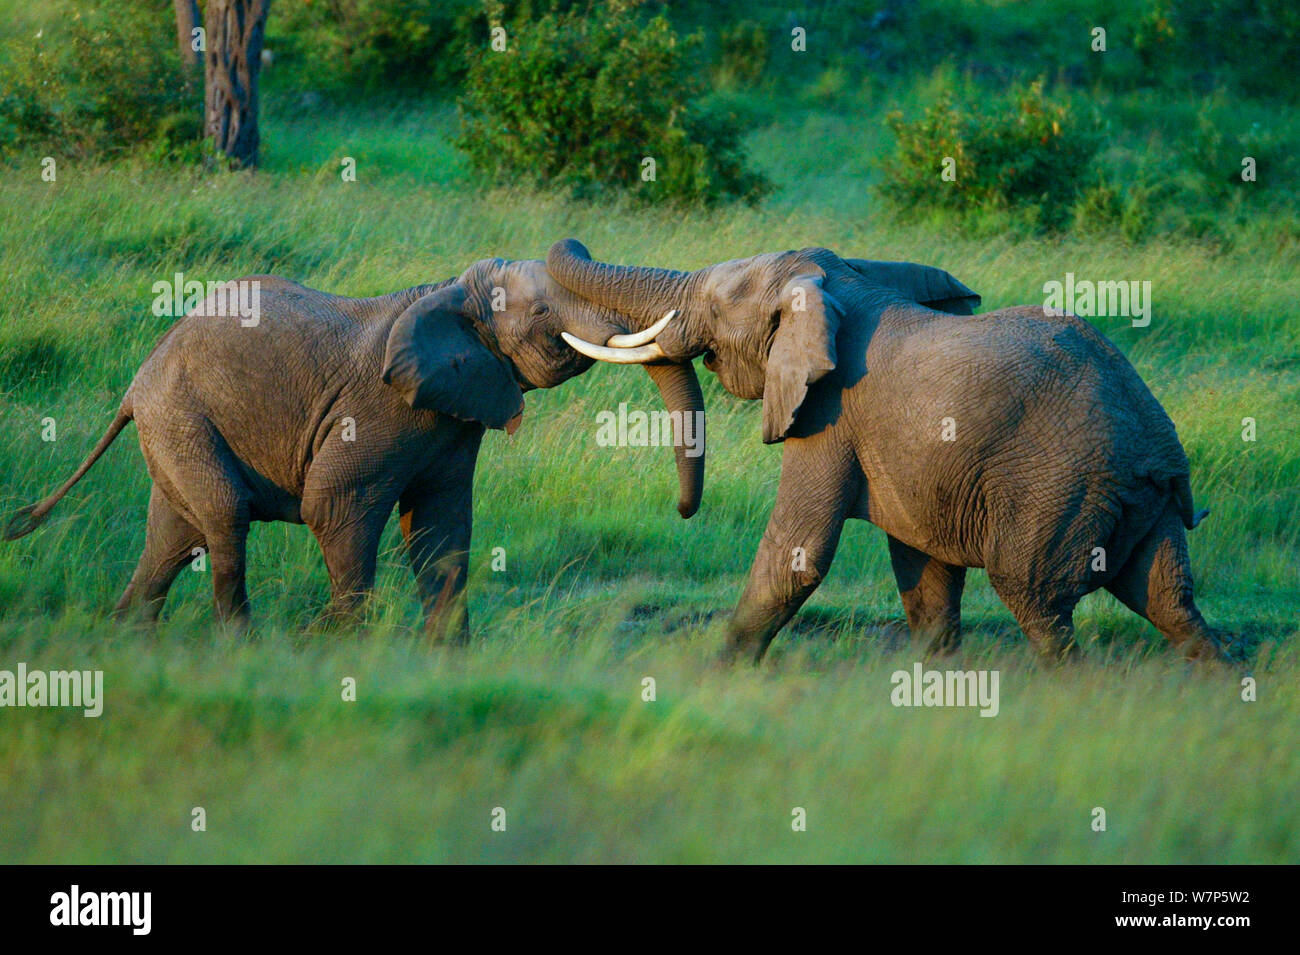 L'éléphant africain (Loxodonta africana), les mâles se battre. Masai-Mara Game Reserve, Kenya. Séquence 1 de 4. Banque D'Images